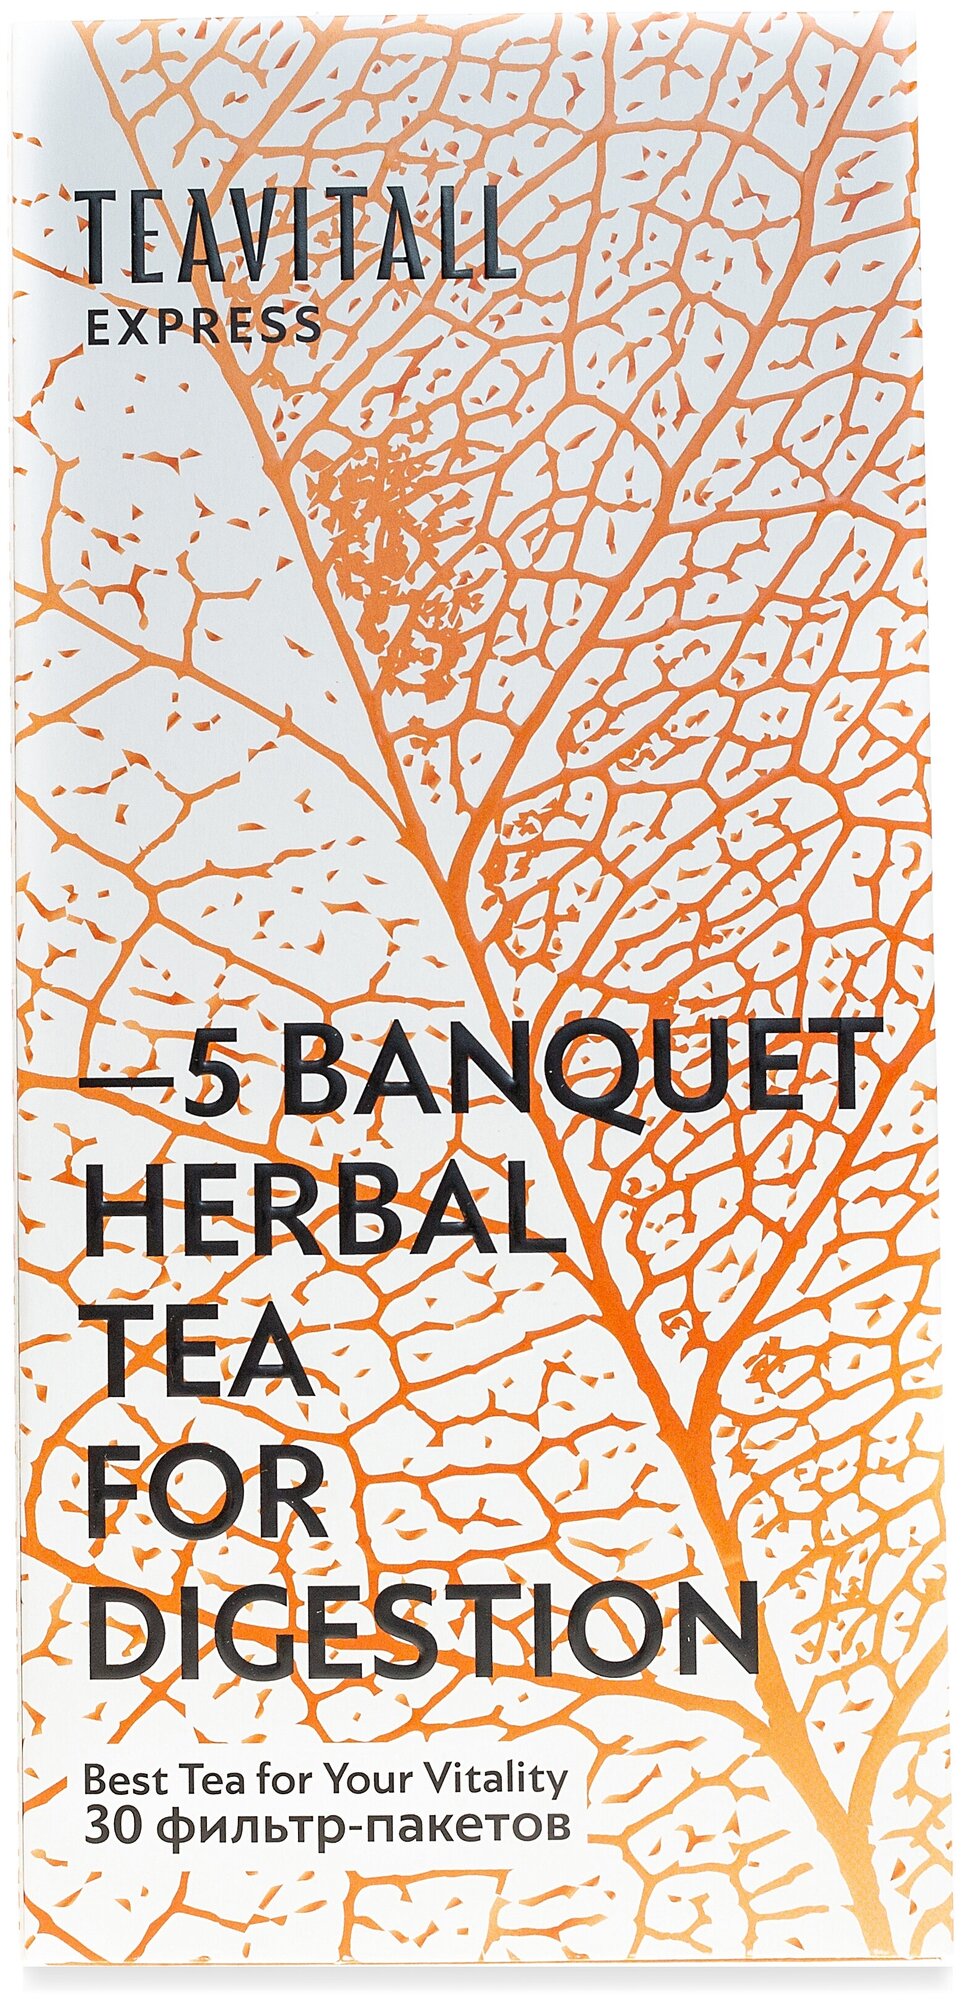 Чайный напиток для улучшения пищеварения TeaVitall Express Banquet 5,30 фильтр-пакетов по 2 г